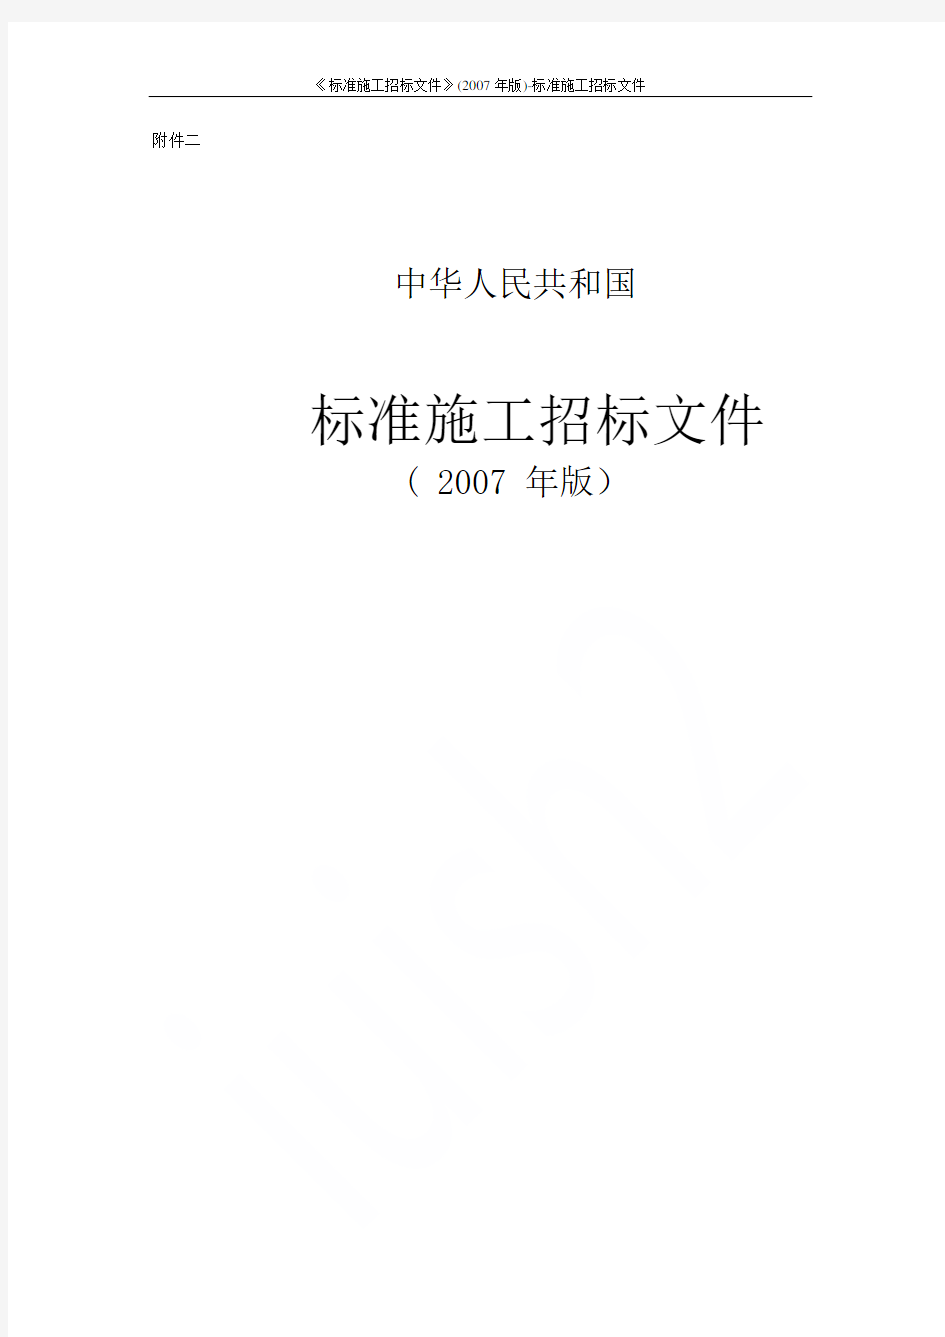 《标准施工招标文件》(2007年版)-标准施工招标文件